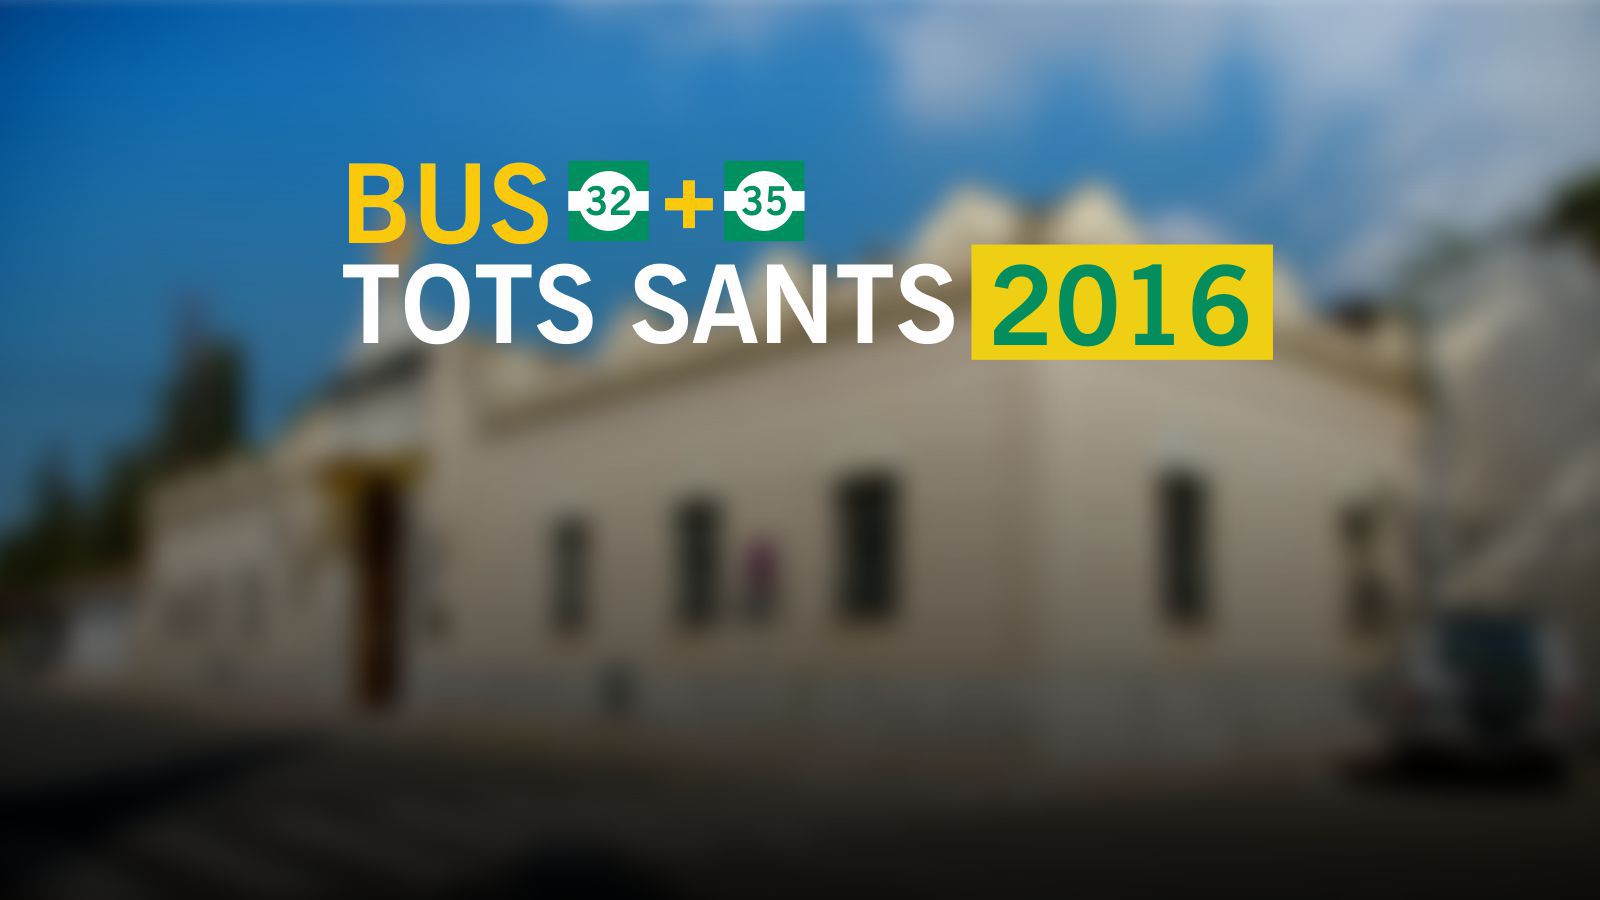 Servei especial TOTS SANTS 2016. Bus gratuït dia 1 de novembre